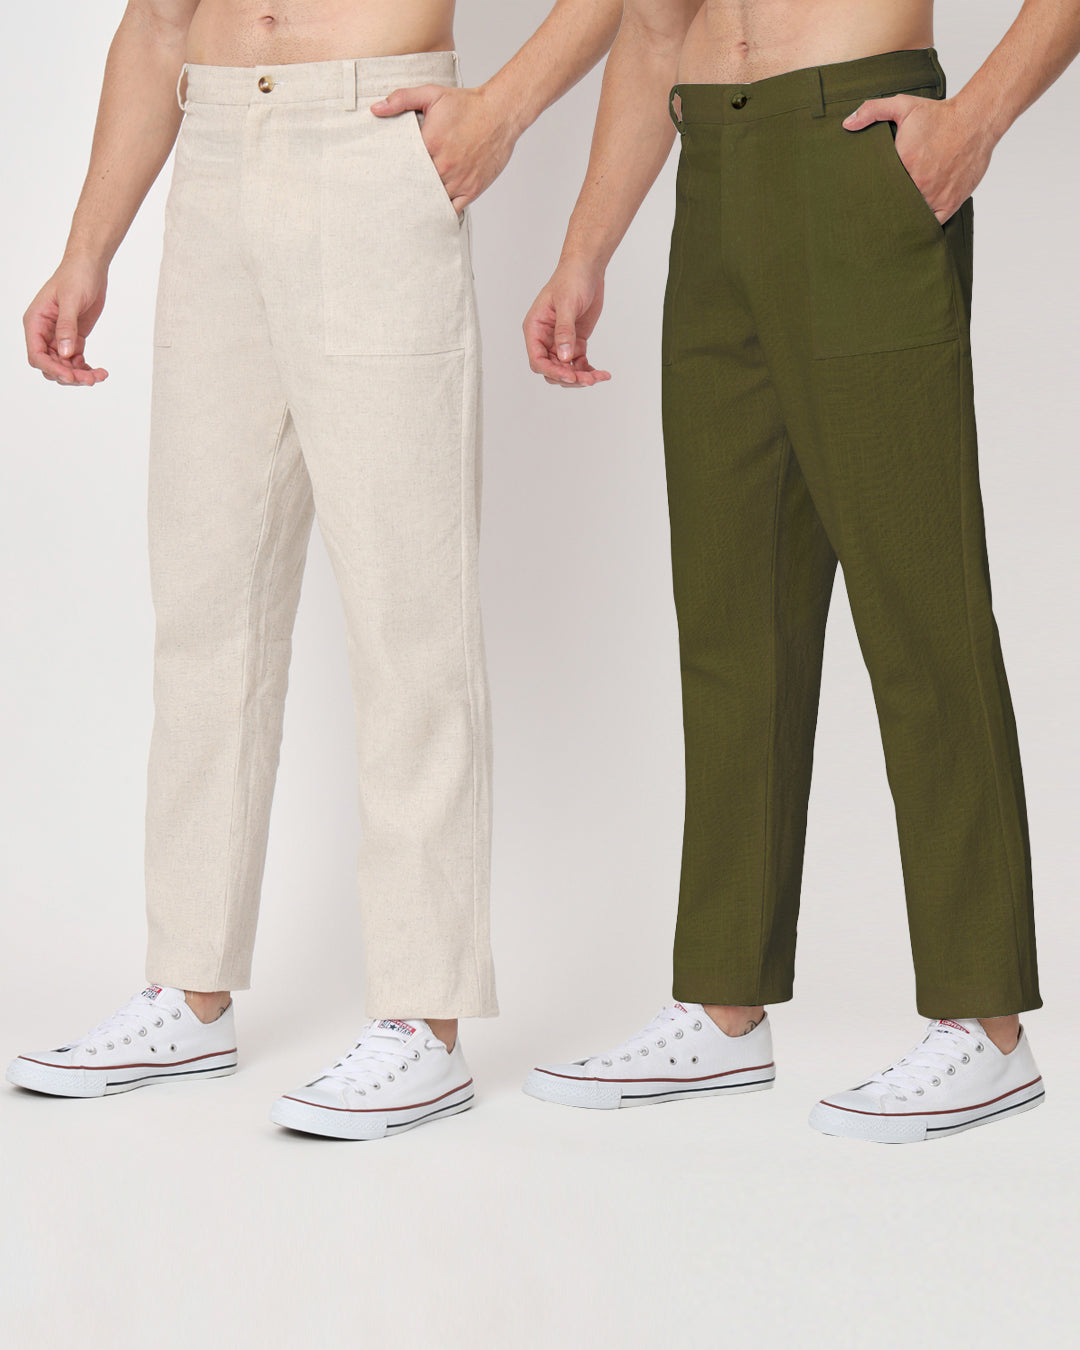 Combo : Comfy Ease Beige & Olive Green Men's Pants - Set of 2